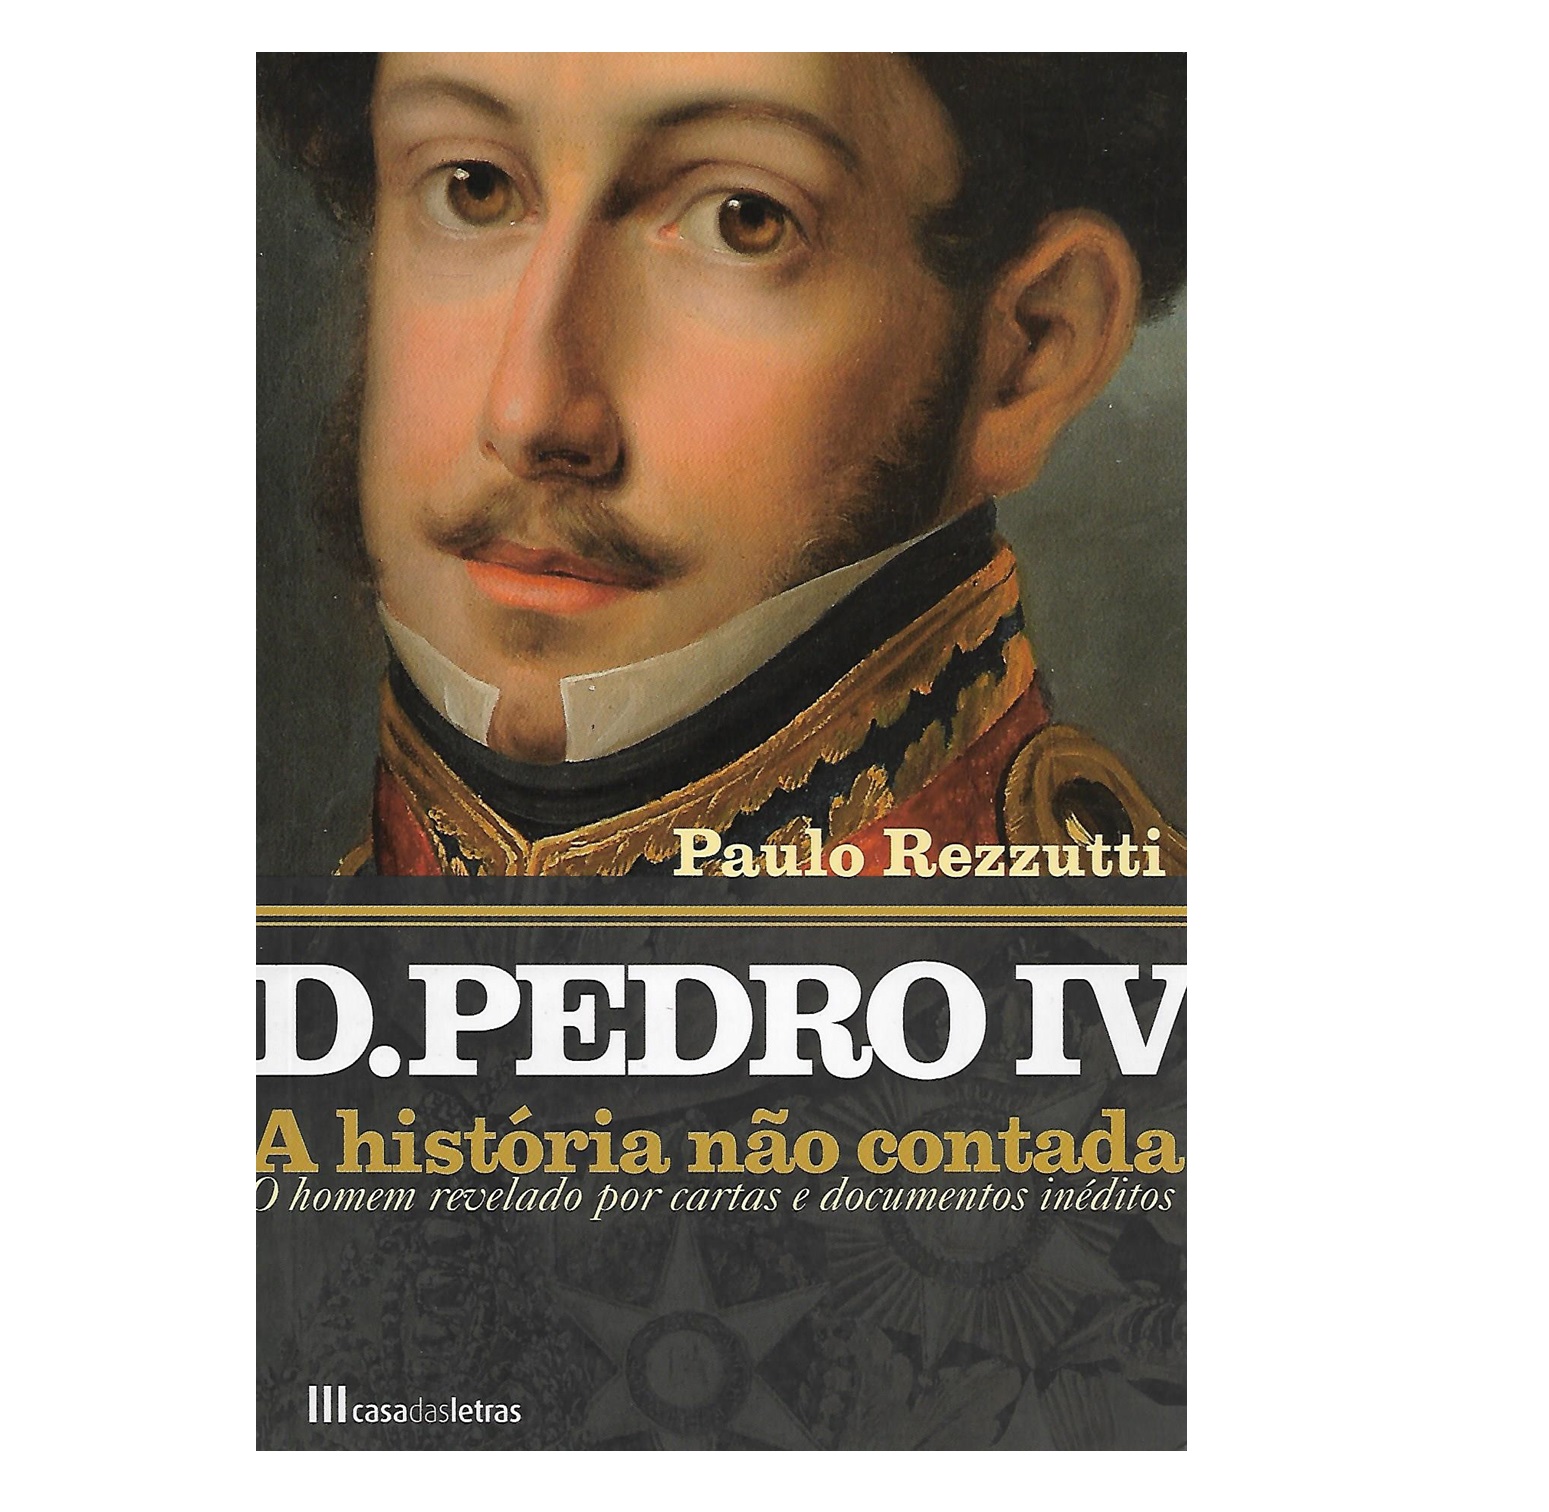 D. PEDRO IV: A HISTÓRIA NÃO CONTADA